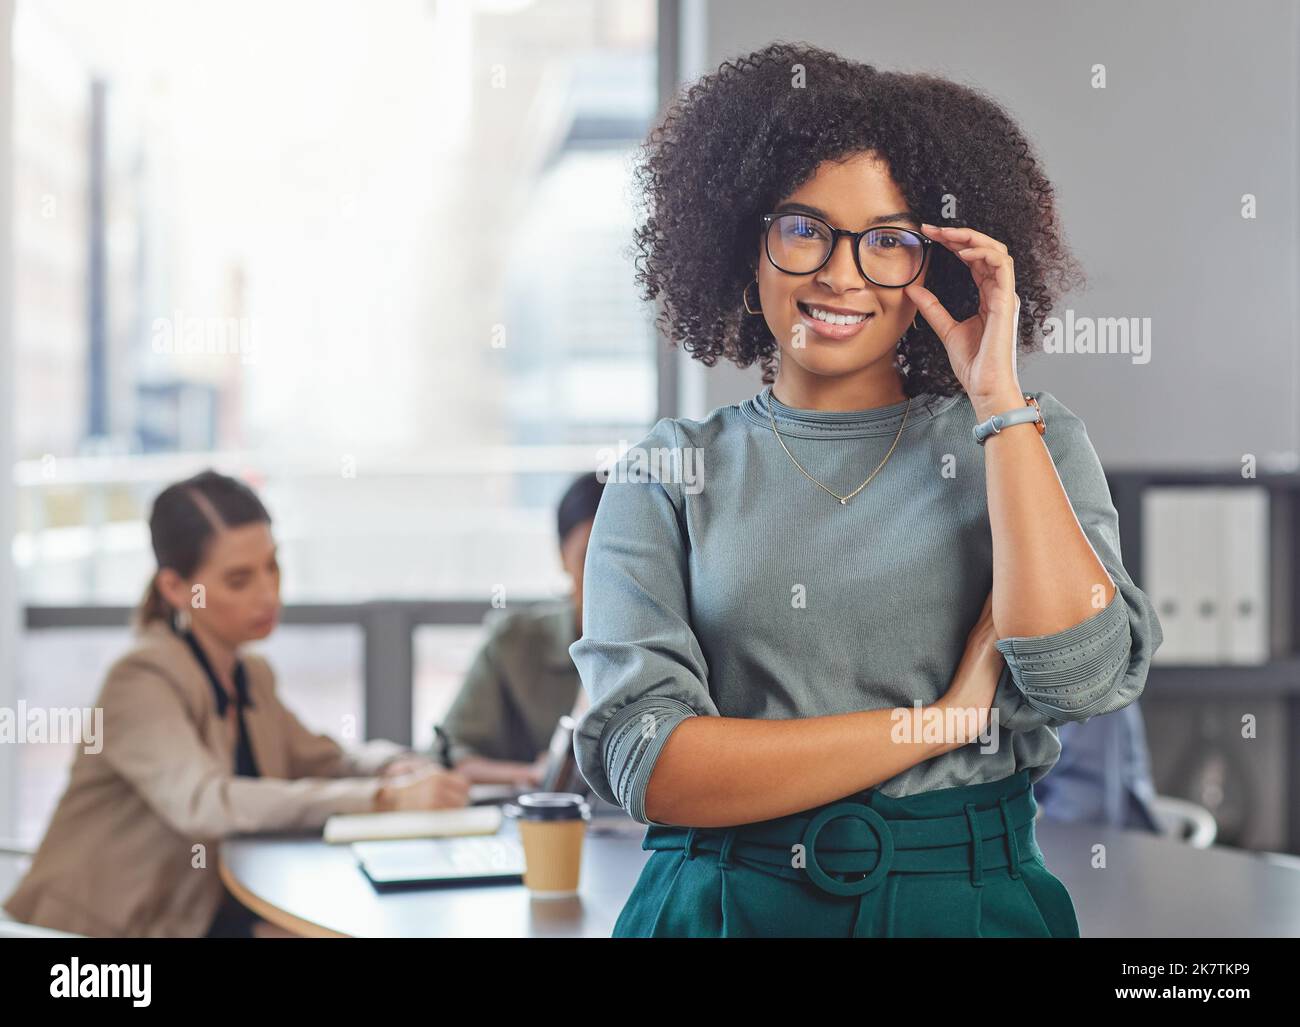 Das hält mich nicht auf. Porträt einer jungen Geschäftsfrau, die ihre Arme faltet und lächelt, während ihre Kollegen im Hintergrund ein Treffen abhalten. Stockfoto